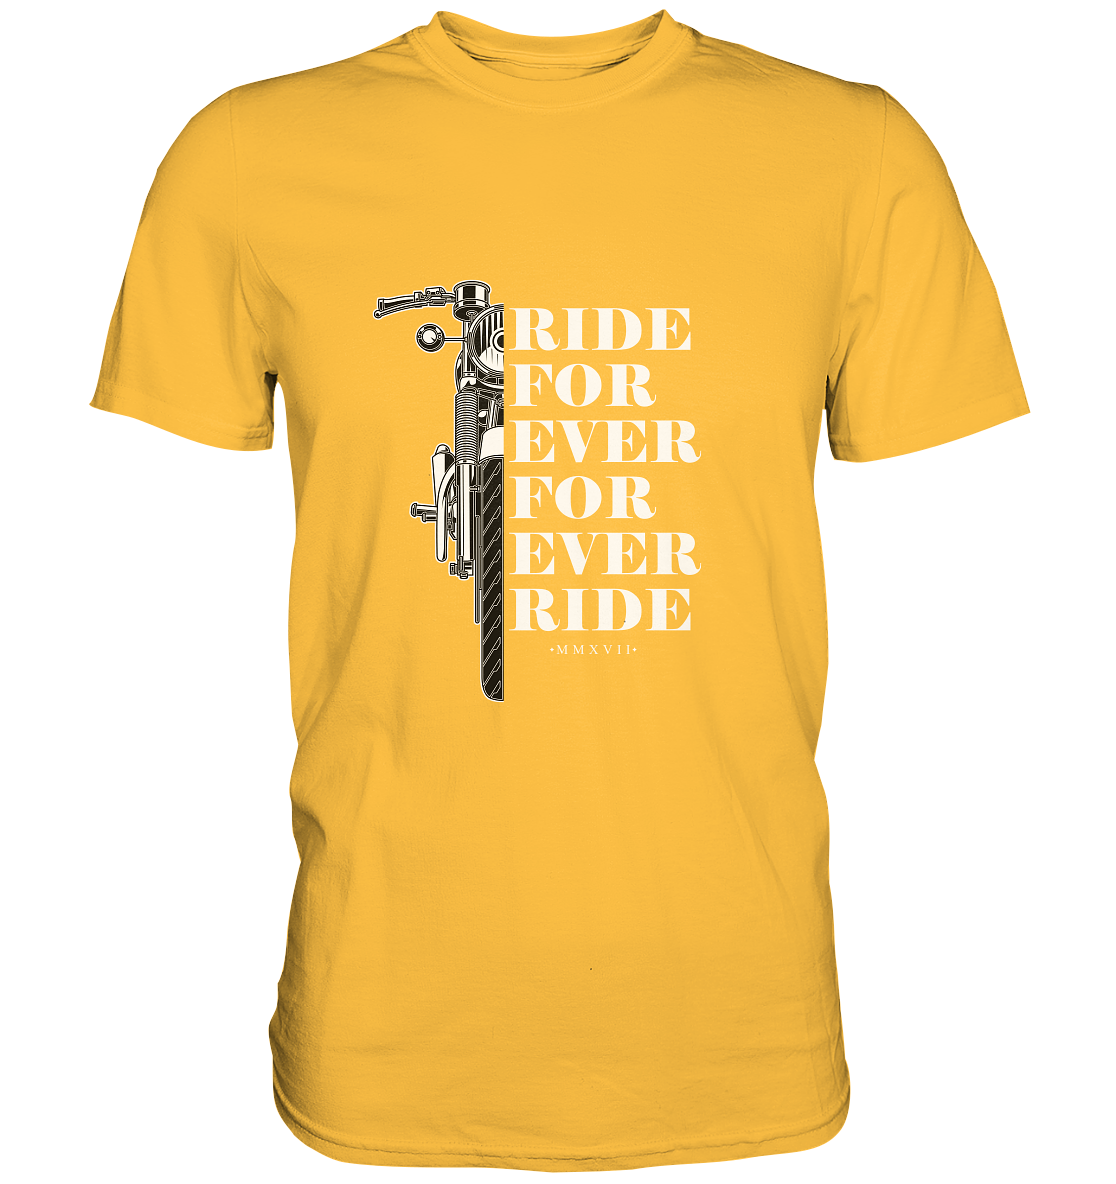 Motorrad mit Spruch Ride for ever... - Premium Unisex Shirt - mehrere Farben